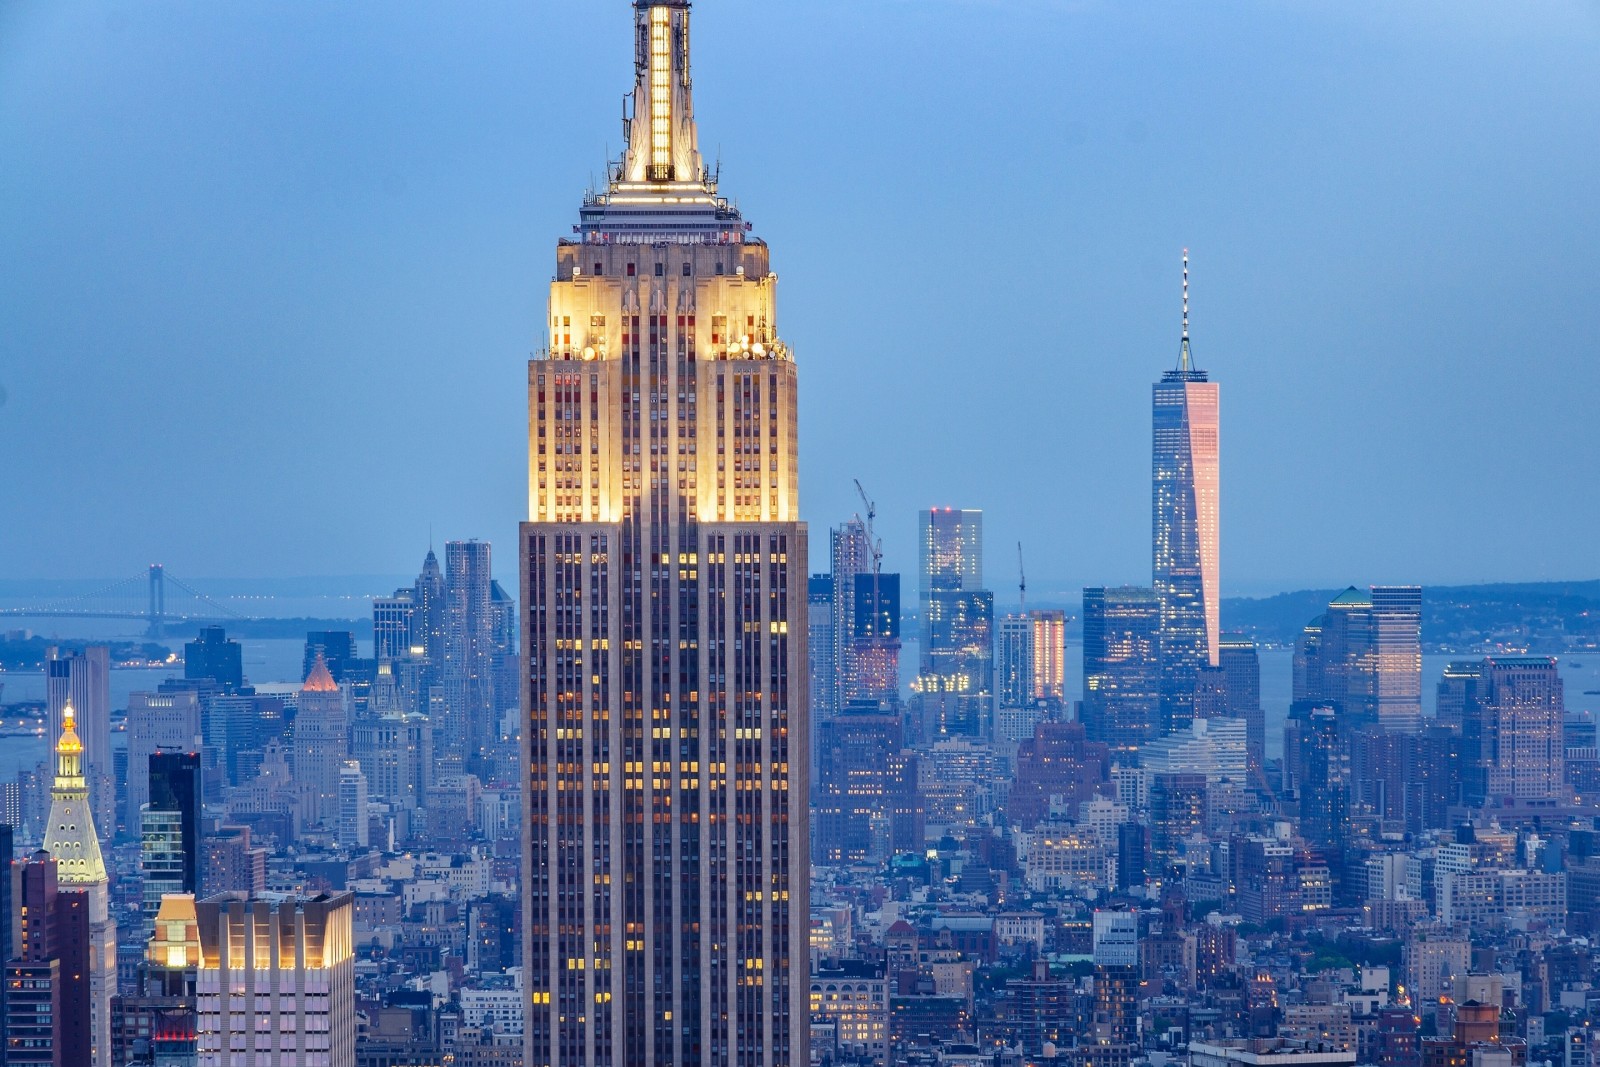 tòa nhà chọc trời, bức tranh toàn cảnh, xây dựng, Newyork, thành phố Manhattan, Thành phố New York, Tòa nhà Empire, tòa nhà Quốc hội